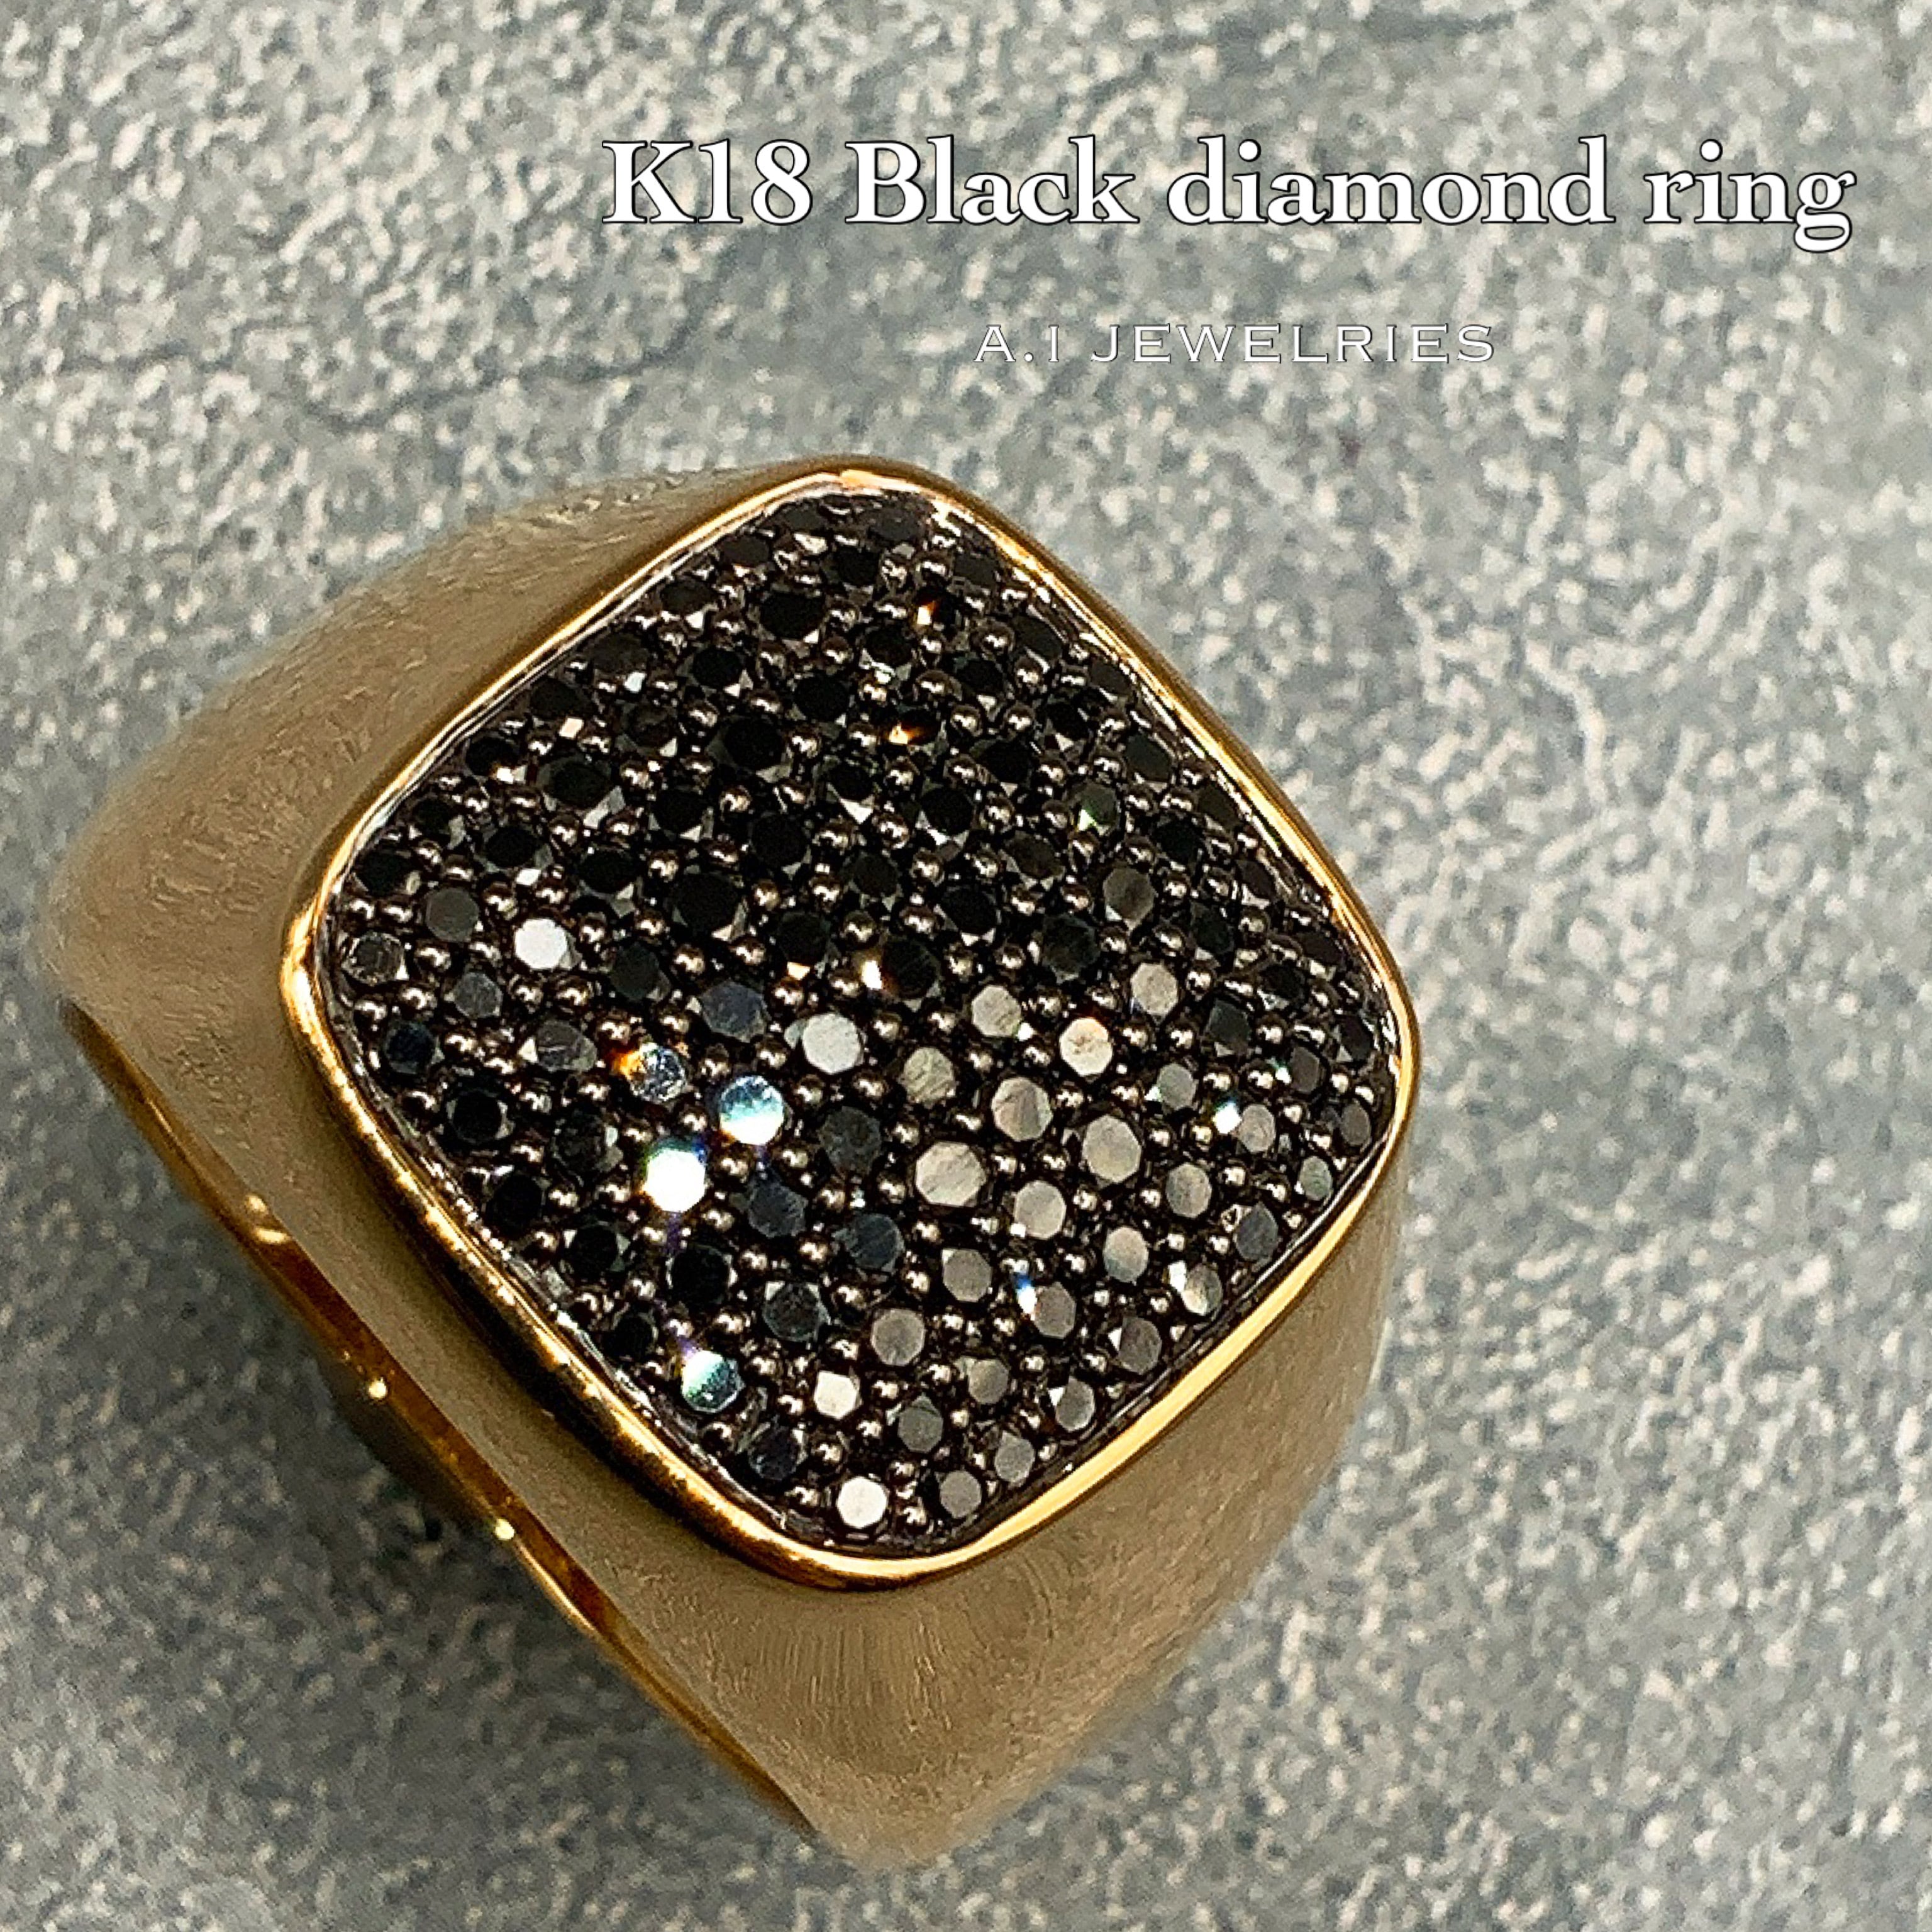 K18 18金 ブラック ダイヤモンド リング K18 Black Diamond ring 品番trg2004522  JEWELRIES エイアイジュエリーズ